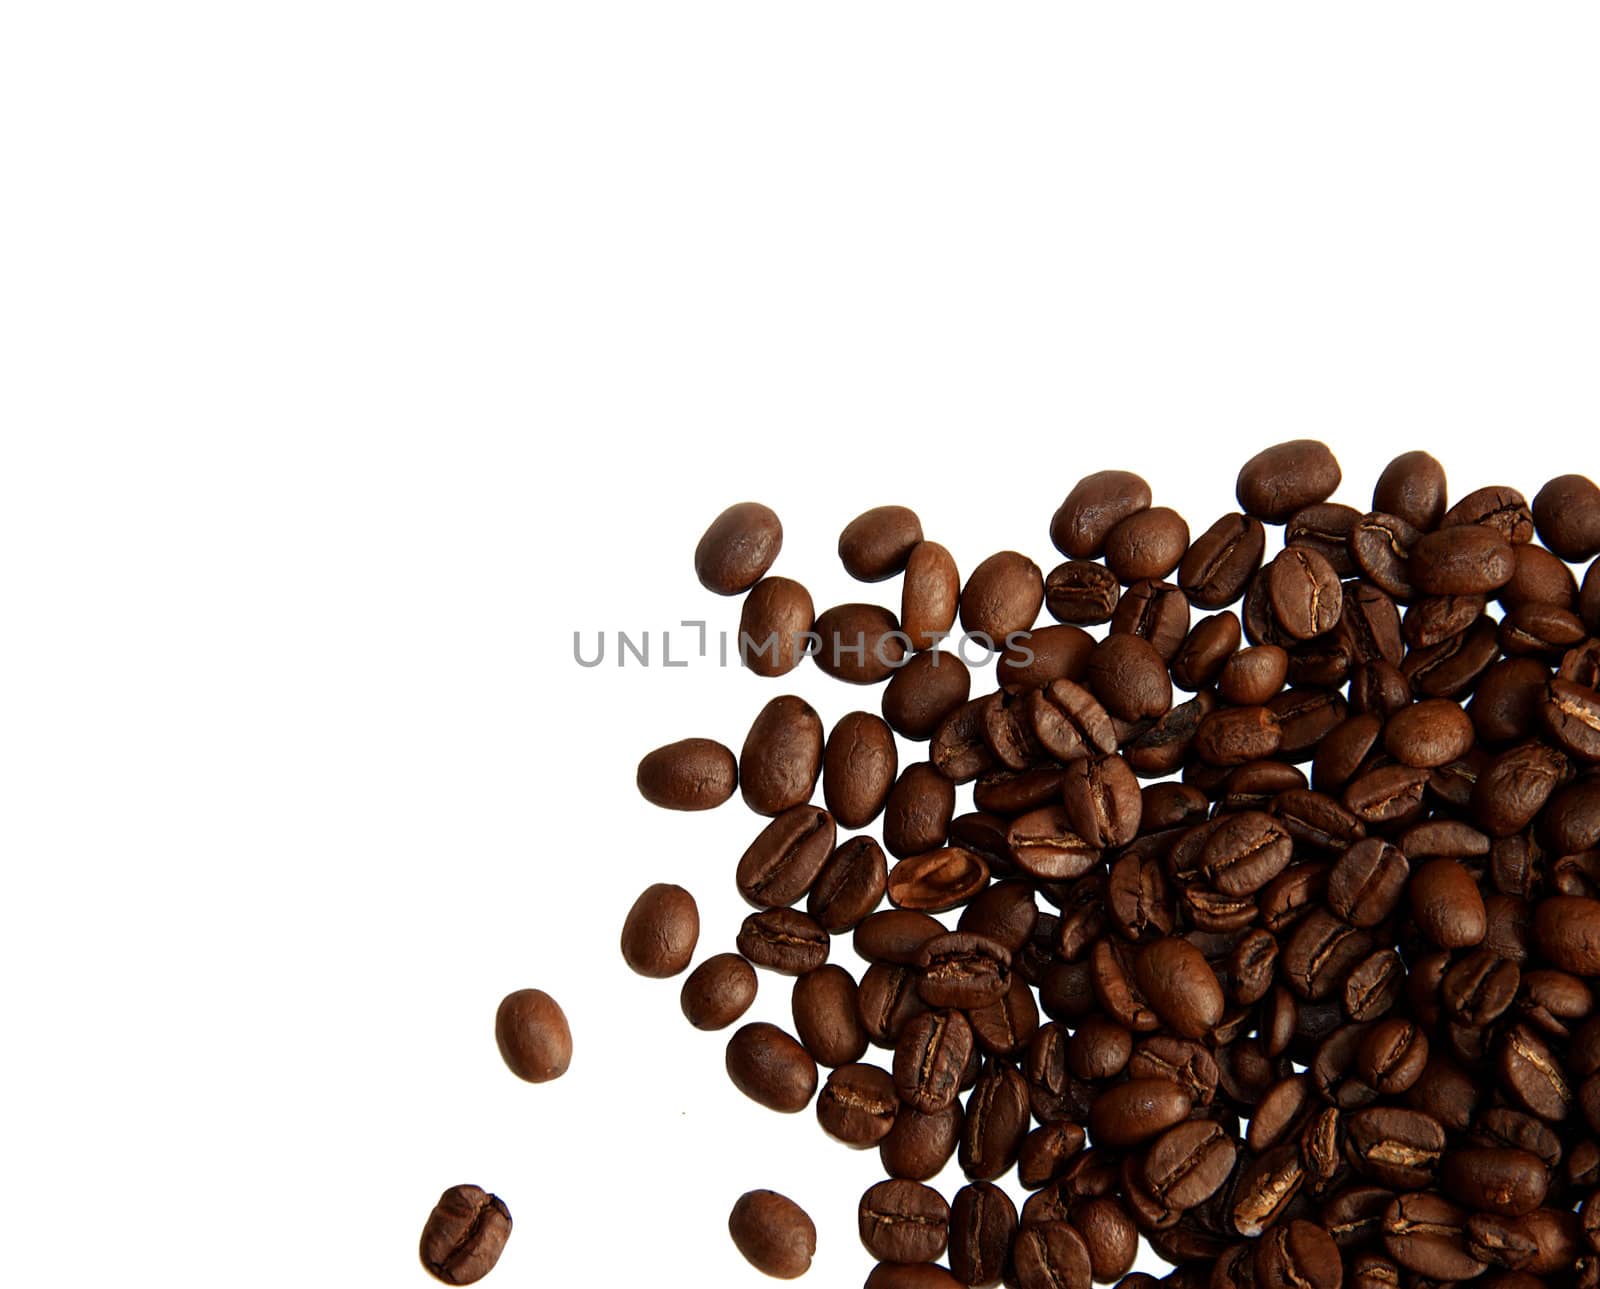 Coffee beans on white background by Kudryashka